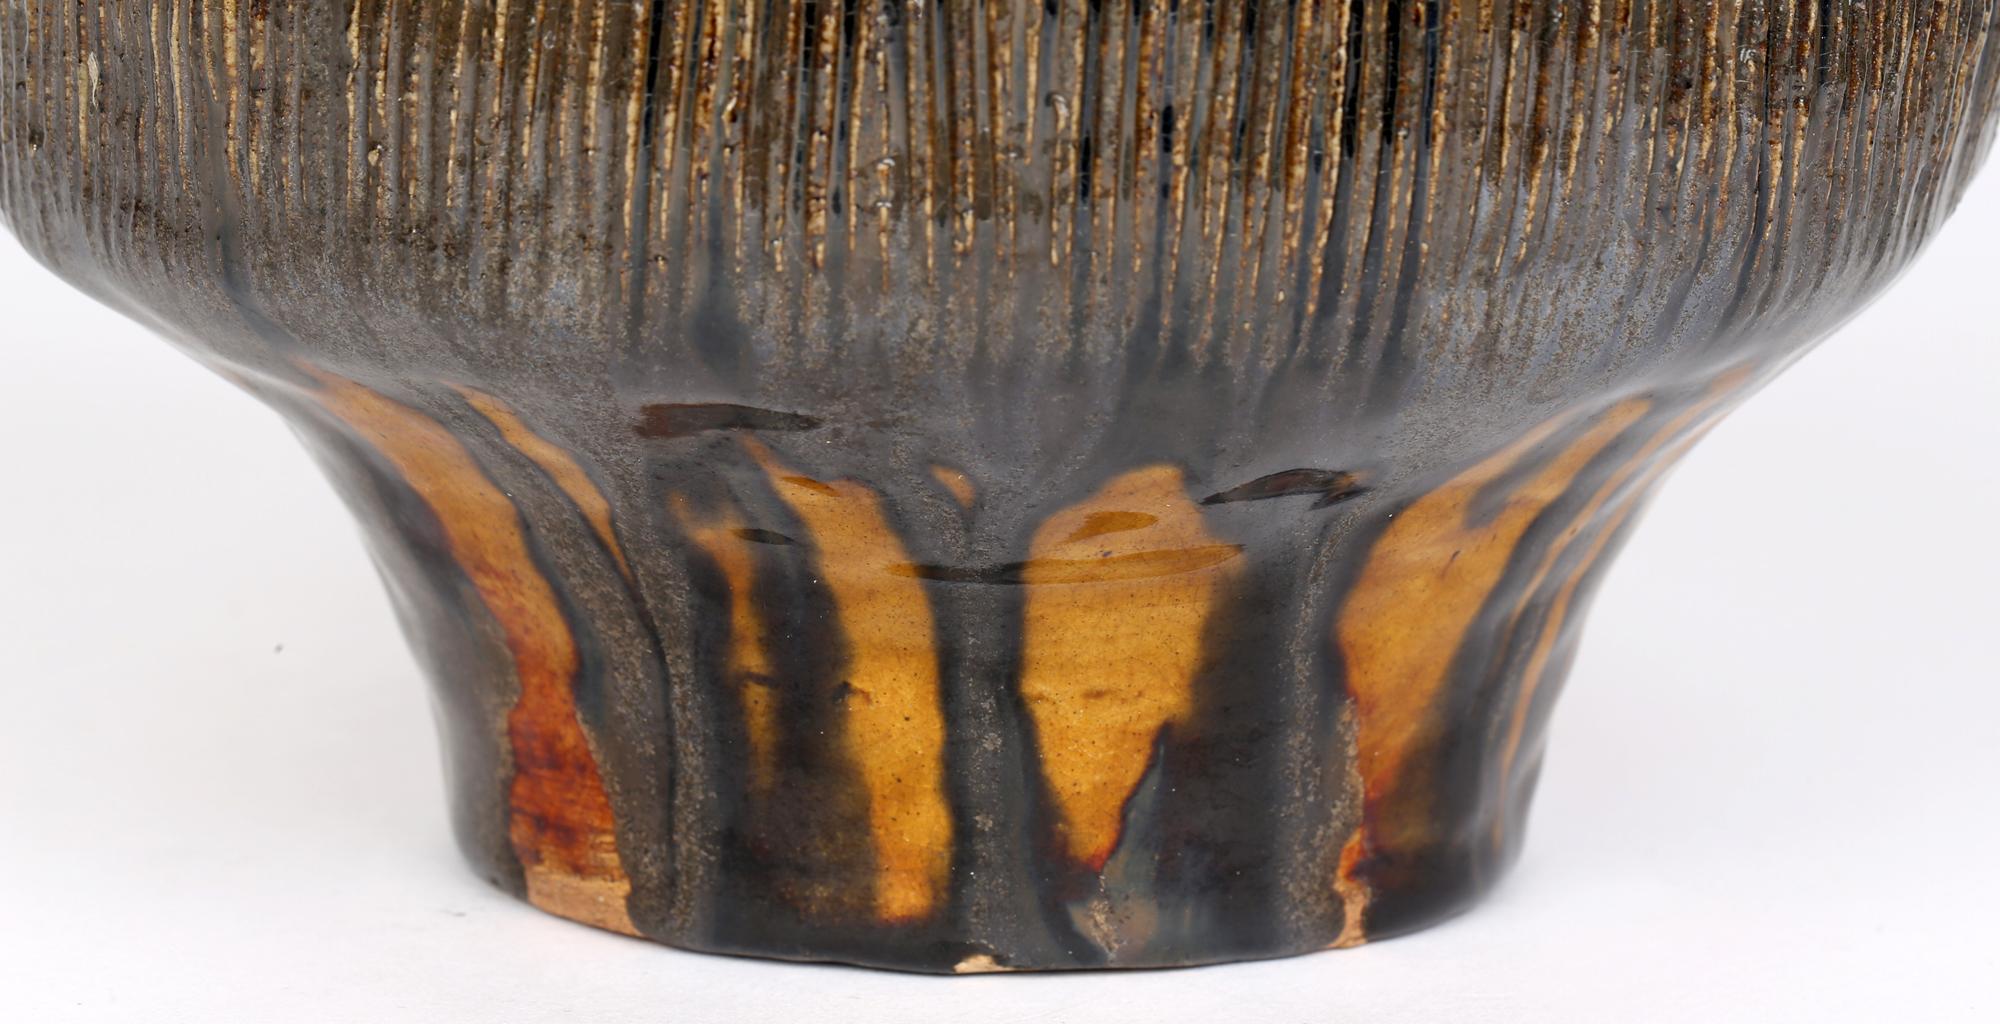 Un vase très élégant en poterie d'atelier du milieu du siècle dans le style brutaliste décoré de glaçures striées jaunes et vertes. Ce vase en grès très travaillé repose sur une base ronde plate et étroite, avec un corps inférieur étroit qui